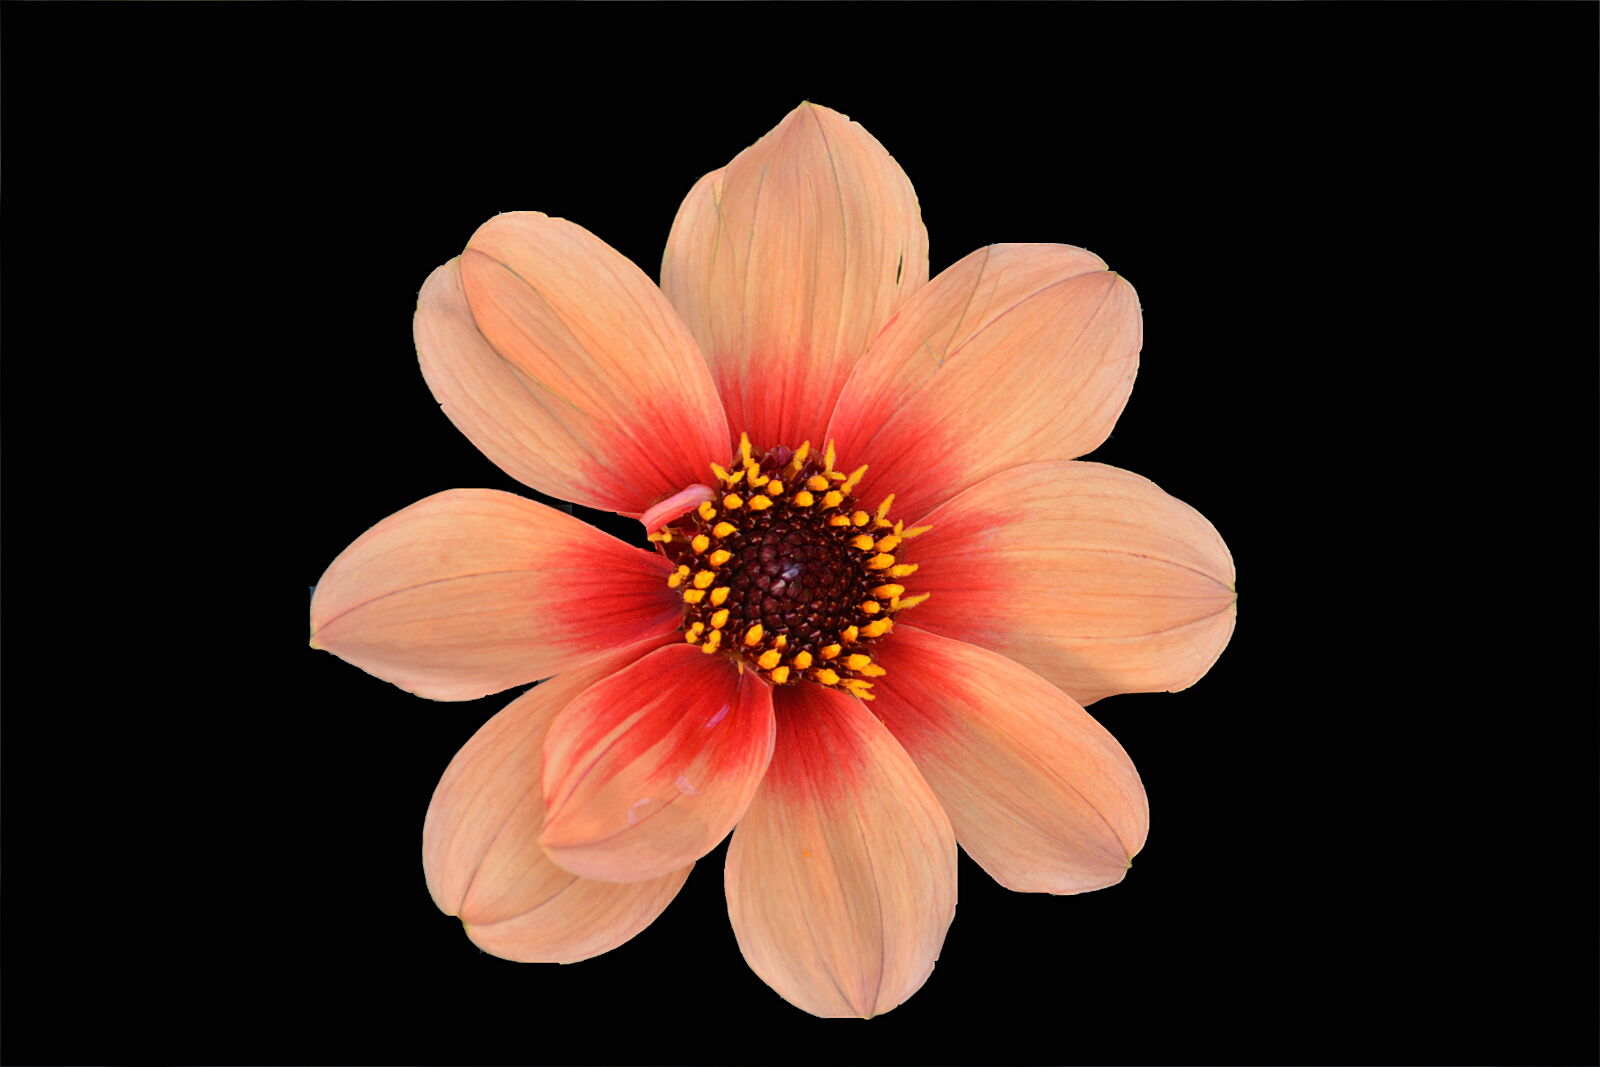 Nikon D5200 + Sigma 18-250mm F3.5-6.3 DC Macro OS HSM sample photo. Botanique, fleur, flore, la photography